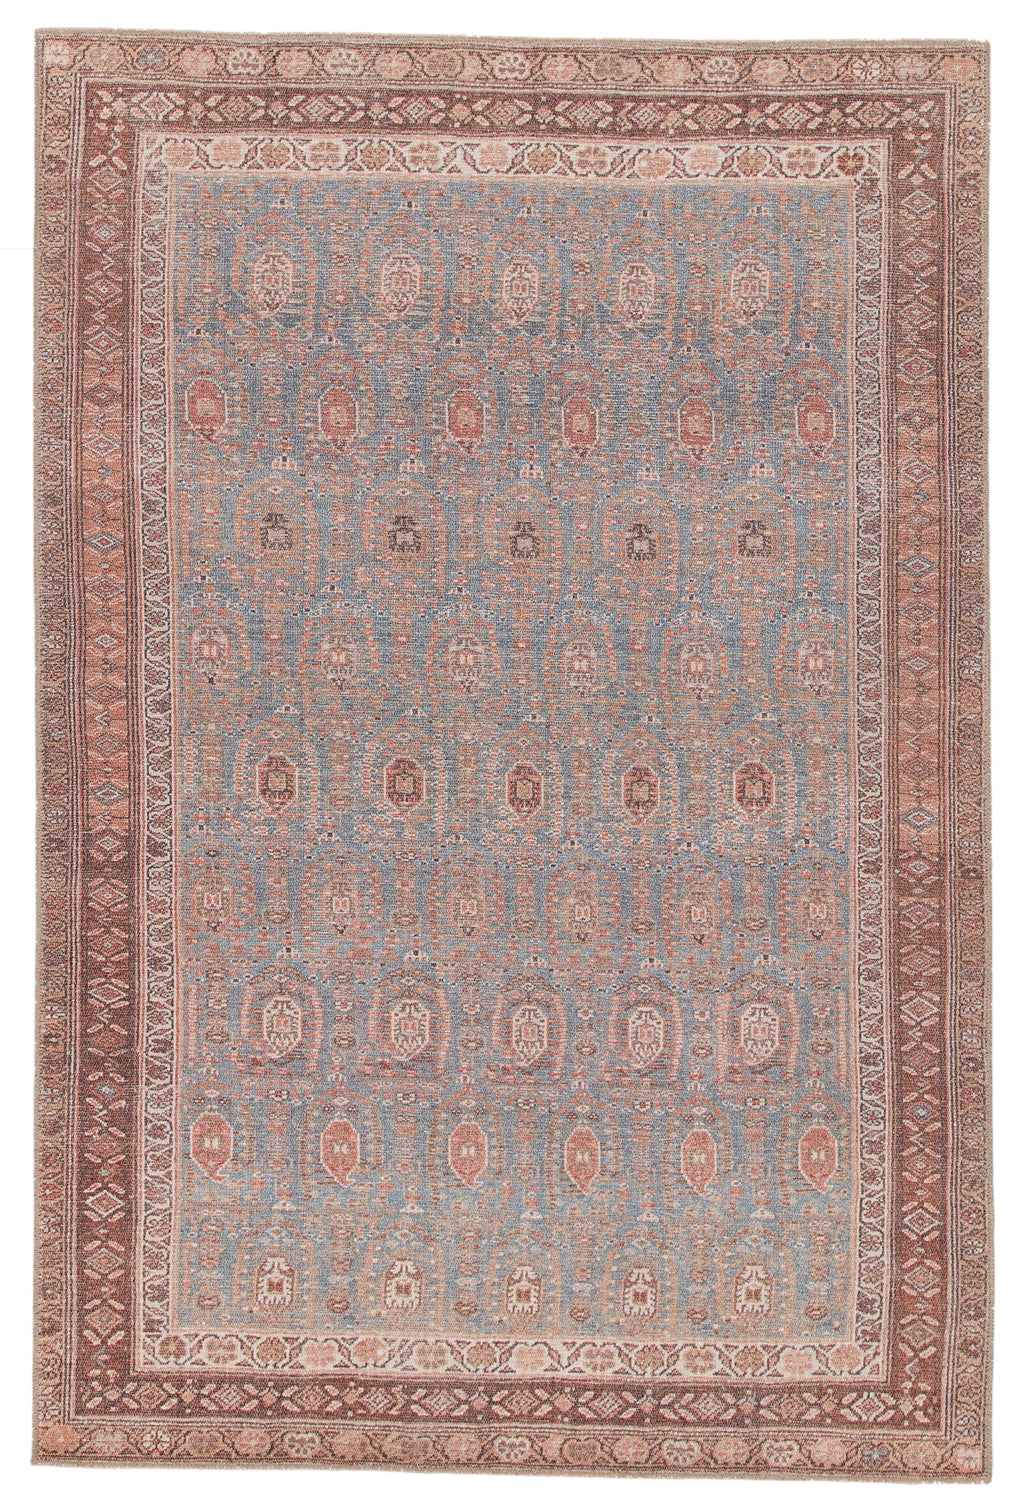 tielo oriental blue brown area rug by jaipur living 1